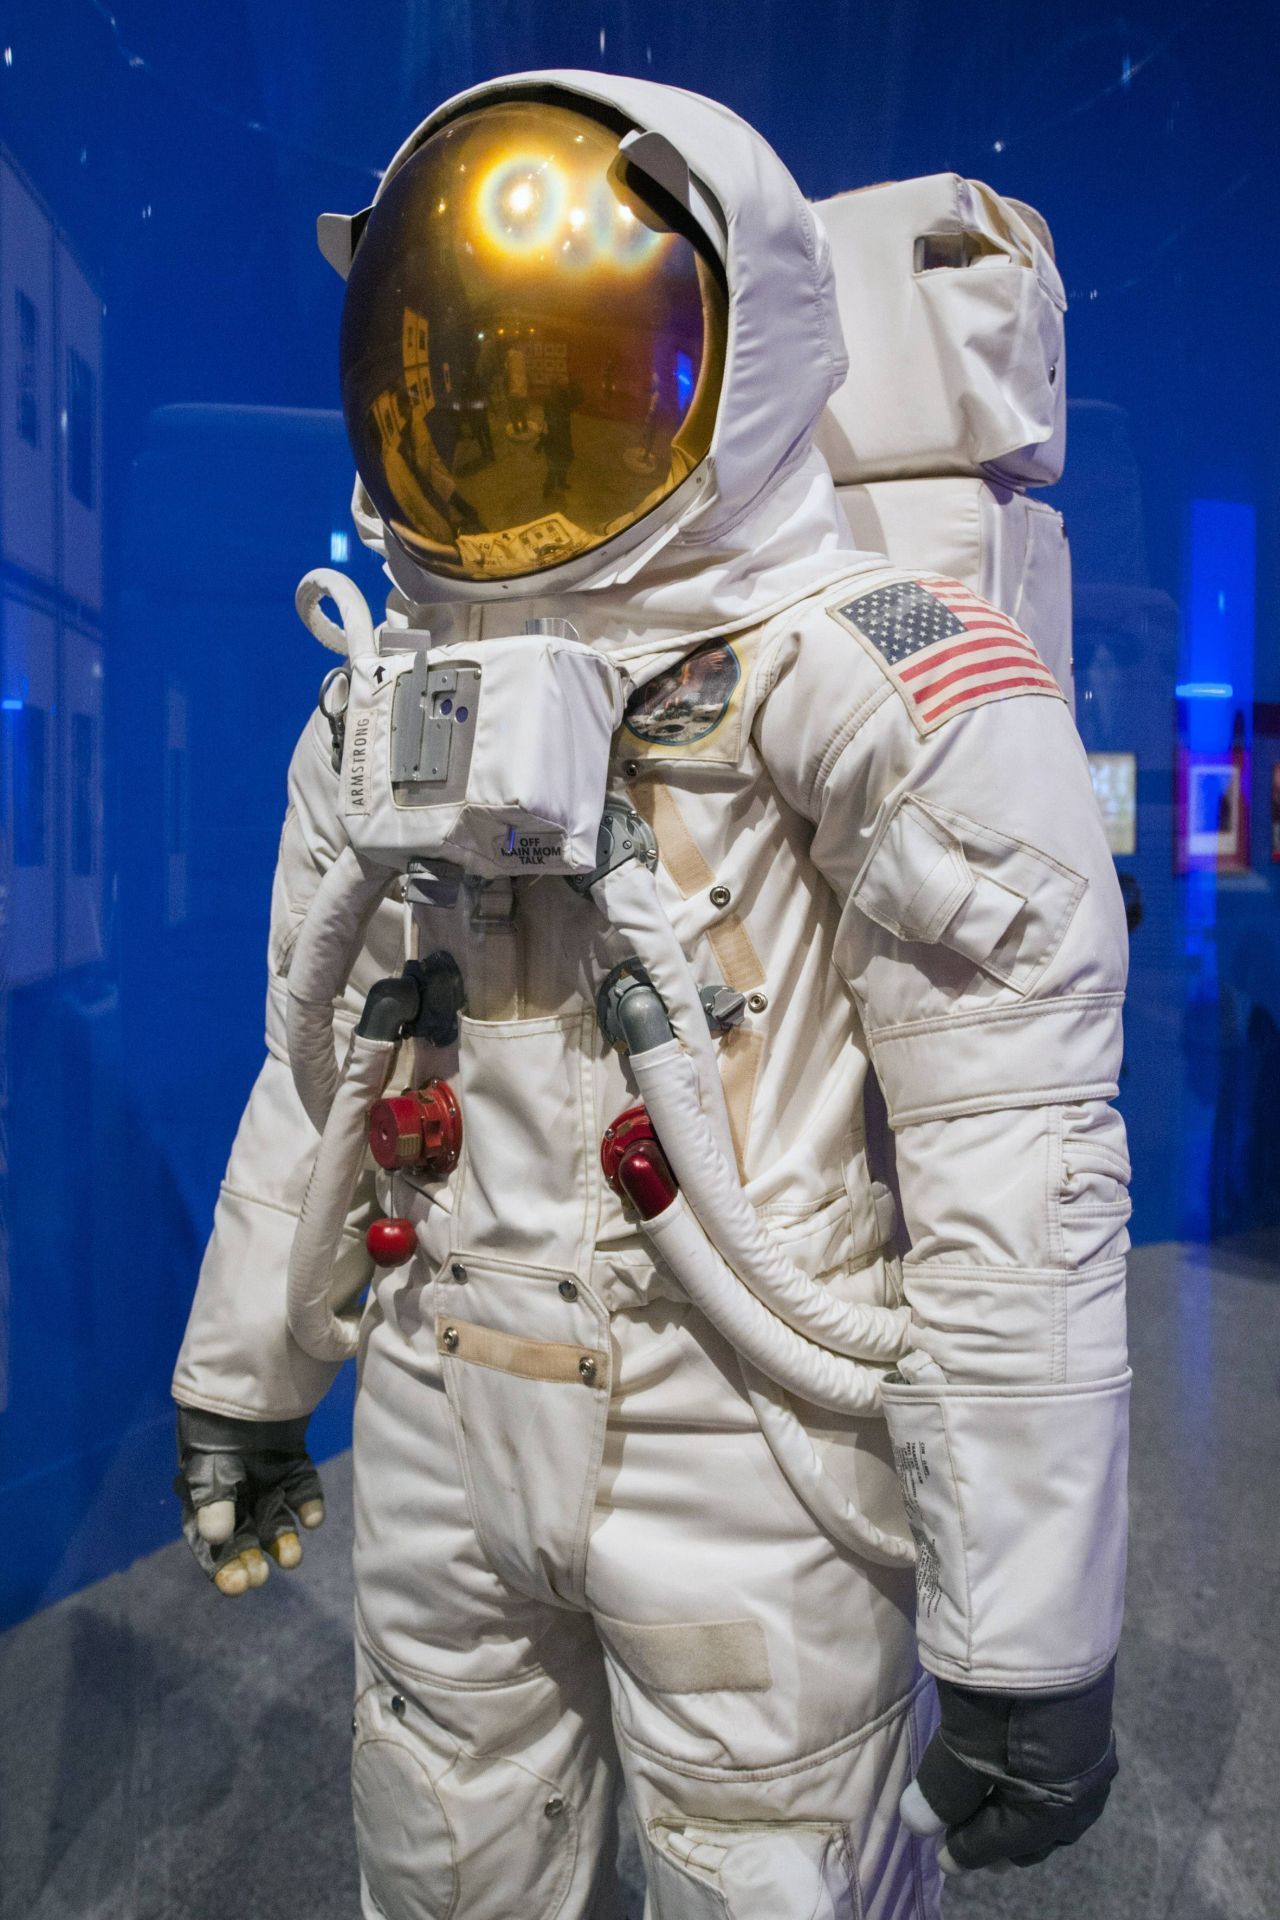 Der berühmteste Raumanzug der Geschichte ist der A7L von Neil Armstrong. Der Astronaut trug den rund 30 Kilogramm schweren Anzug während der Apollo-11-Mission, die 1969 mit dem ersten Spaziergang auf dem Mond ihren Höhepunkt fand. Der Anzug besteht aus 21 verschiedenen Schichten, die vor extremer Hitze und Kälte sowie vor der Gefahr von Mikro-Meteoriten auf dem Mond schützen sollten. 